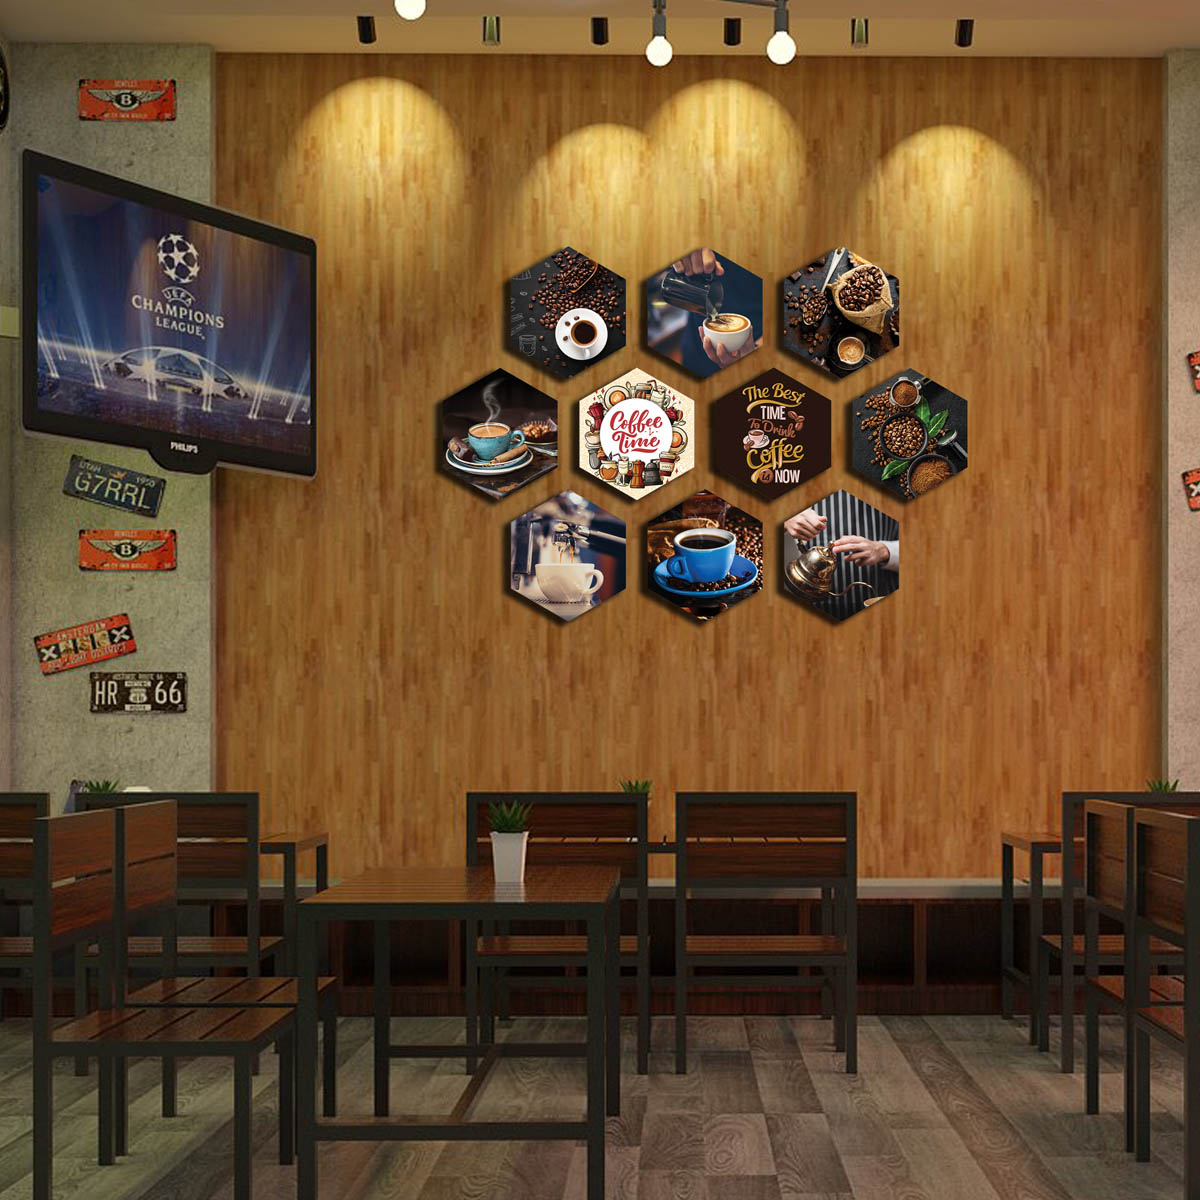 Tranh Formex 3D Nghệ Thuật Chủ đề Coffee -  Dùng Để Dán Tường, Dán Kính, Treo Tường Trang Trí quán Cafe Đẹp - Hình Ly, Hạt Cà Phê 